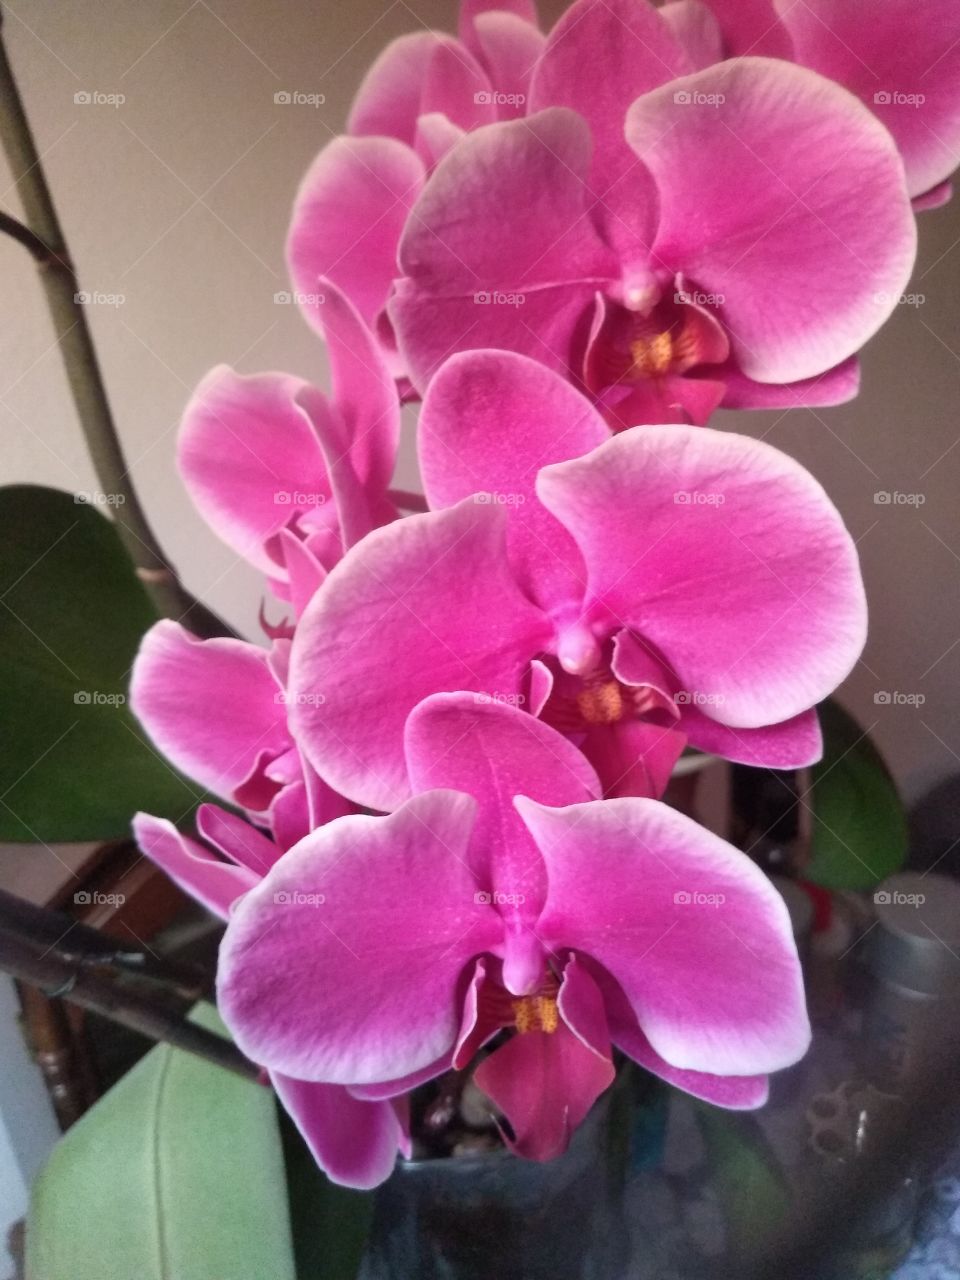 las orquídeas parte de nuestra naturaleza.